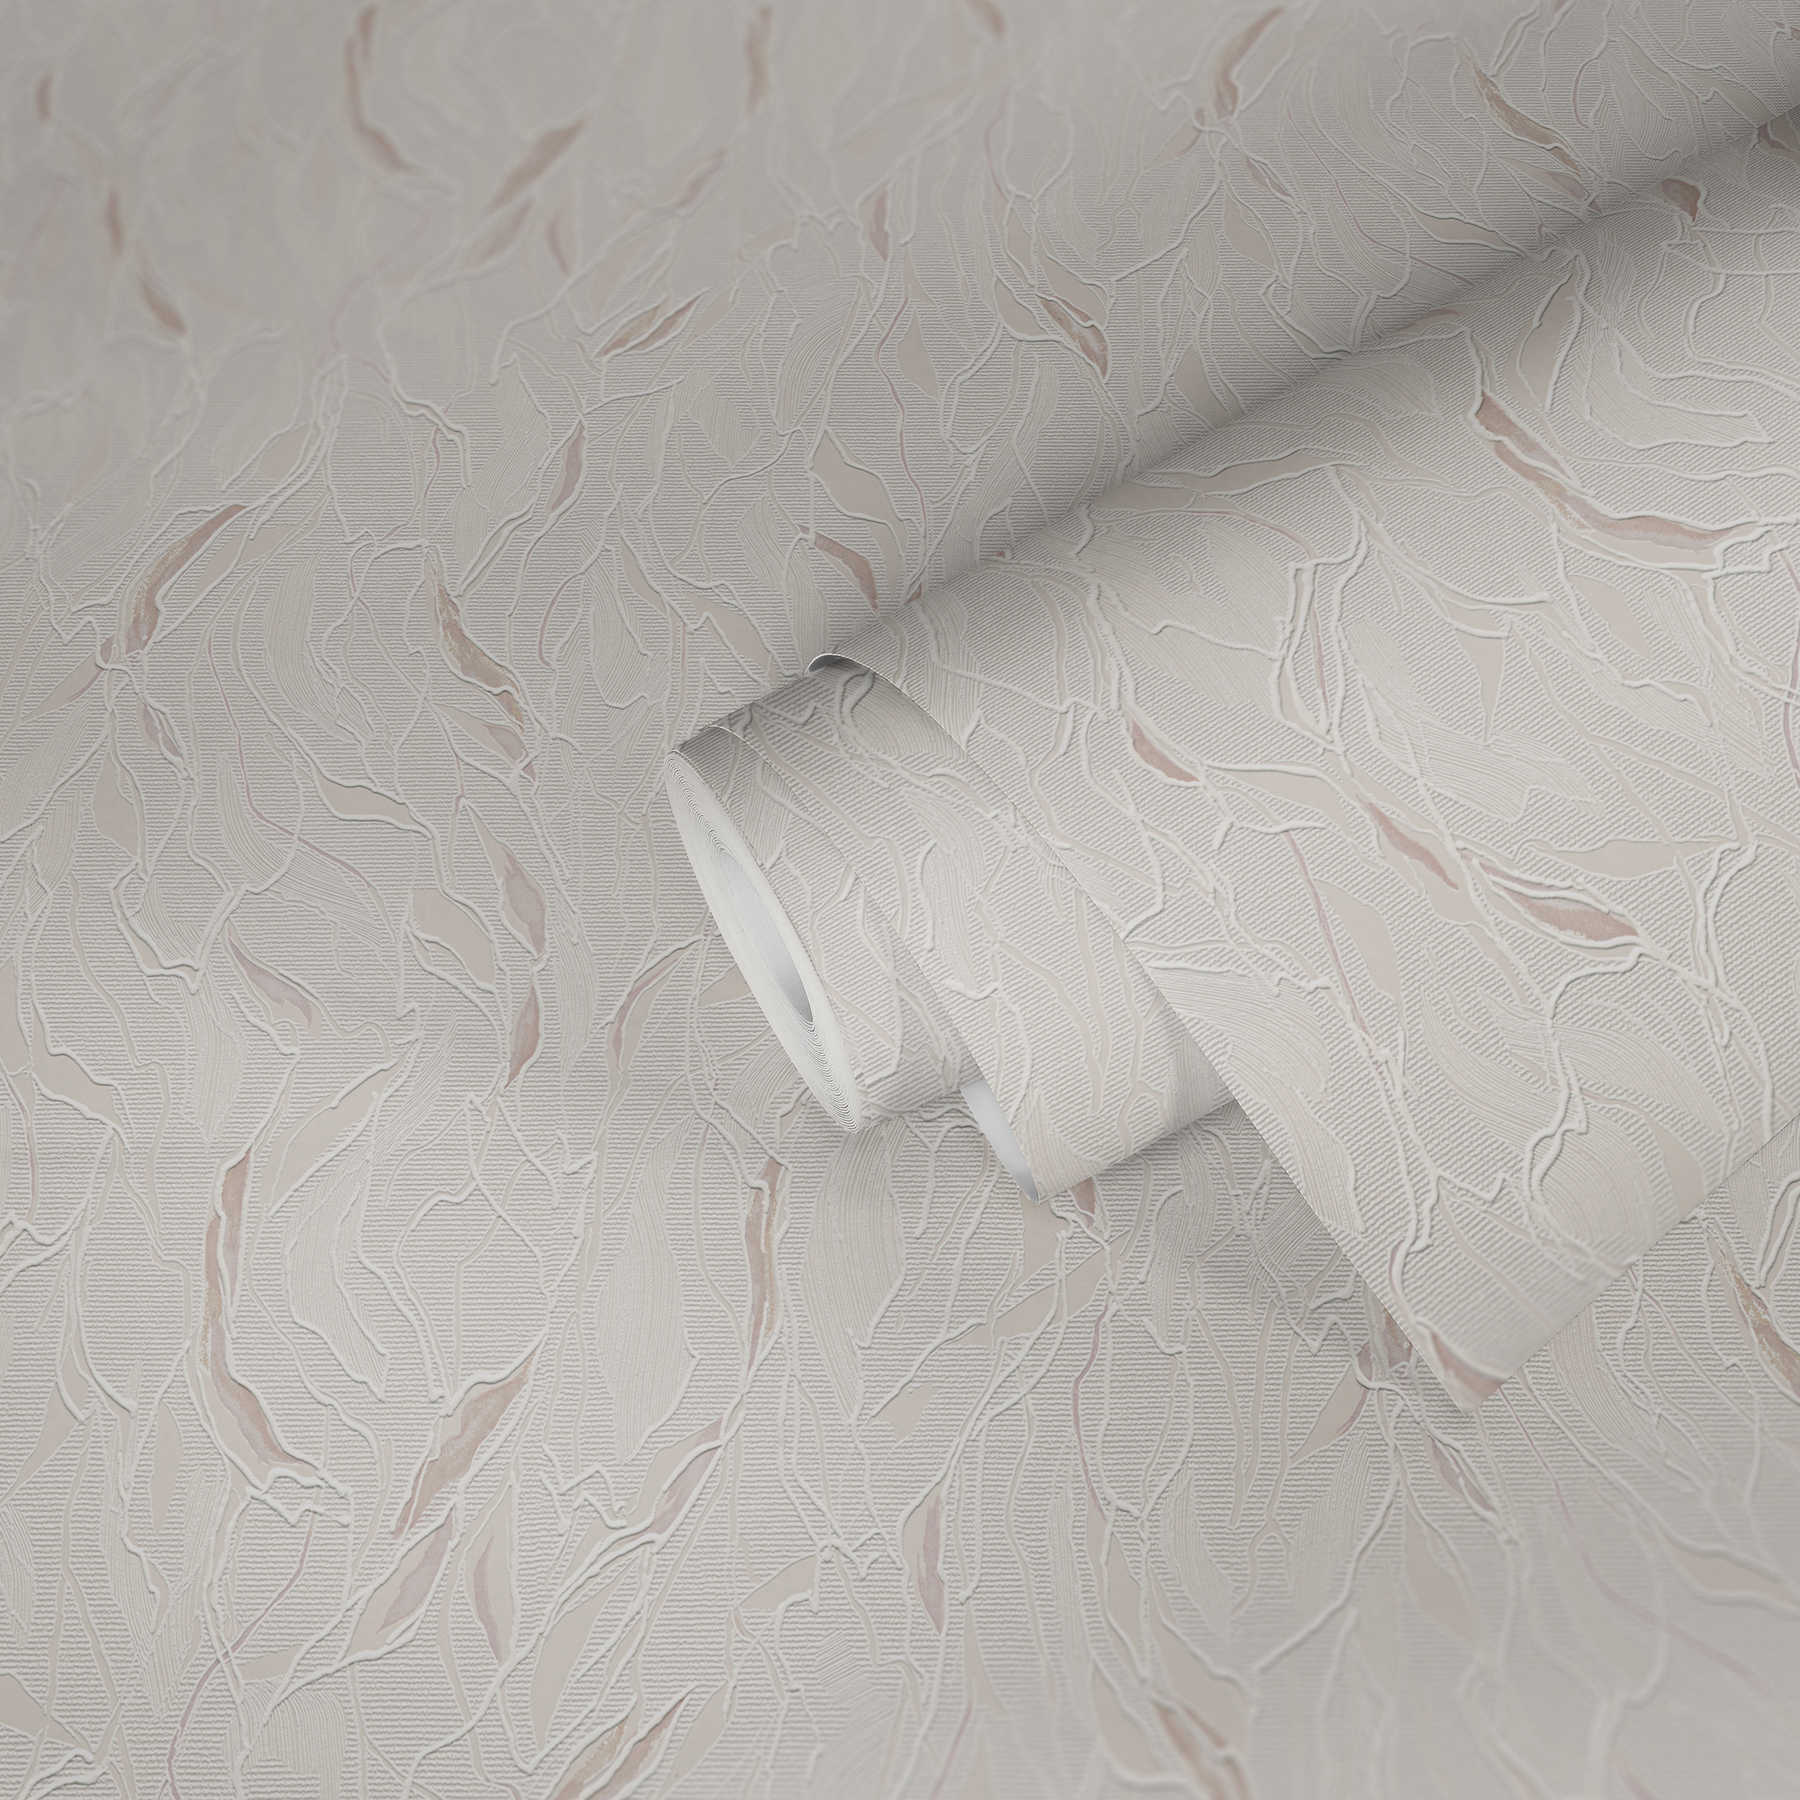             Papier peint à motifs abstrait avec gaufrage & structure de mousse - métallique, blanc
        